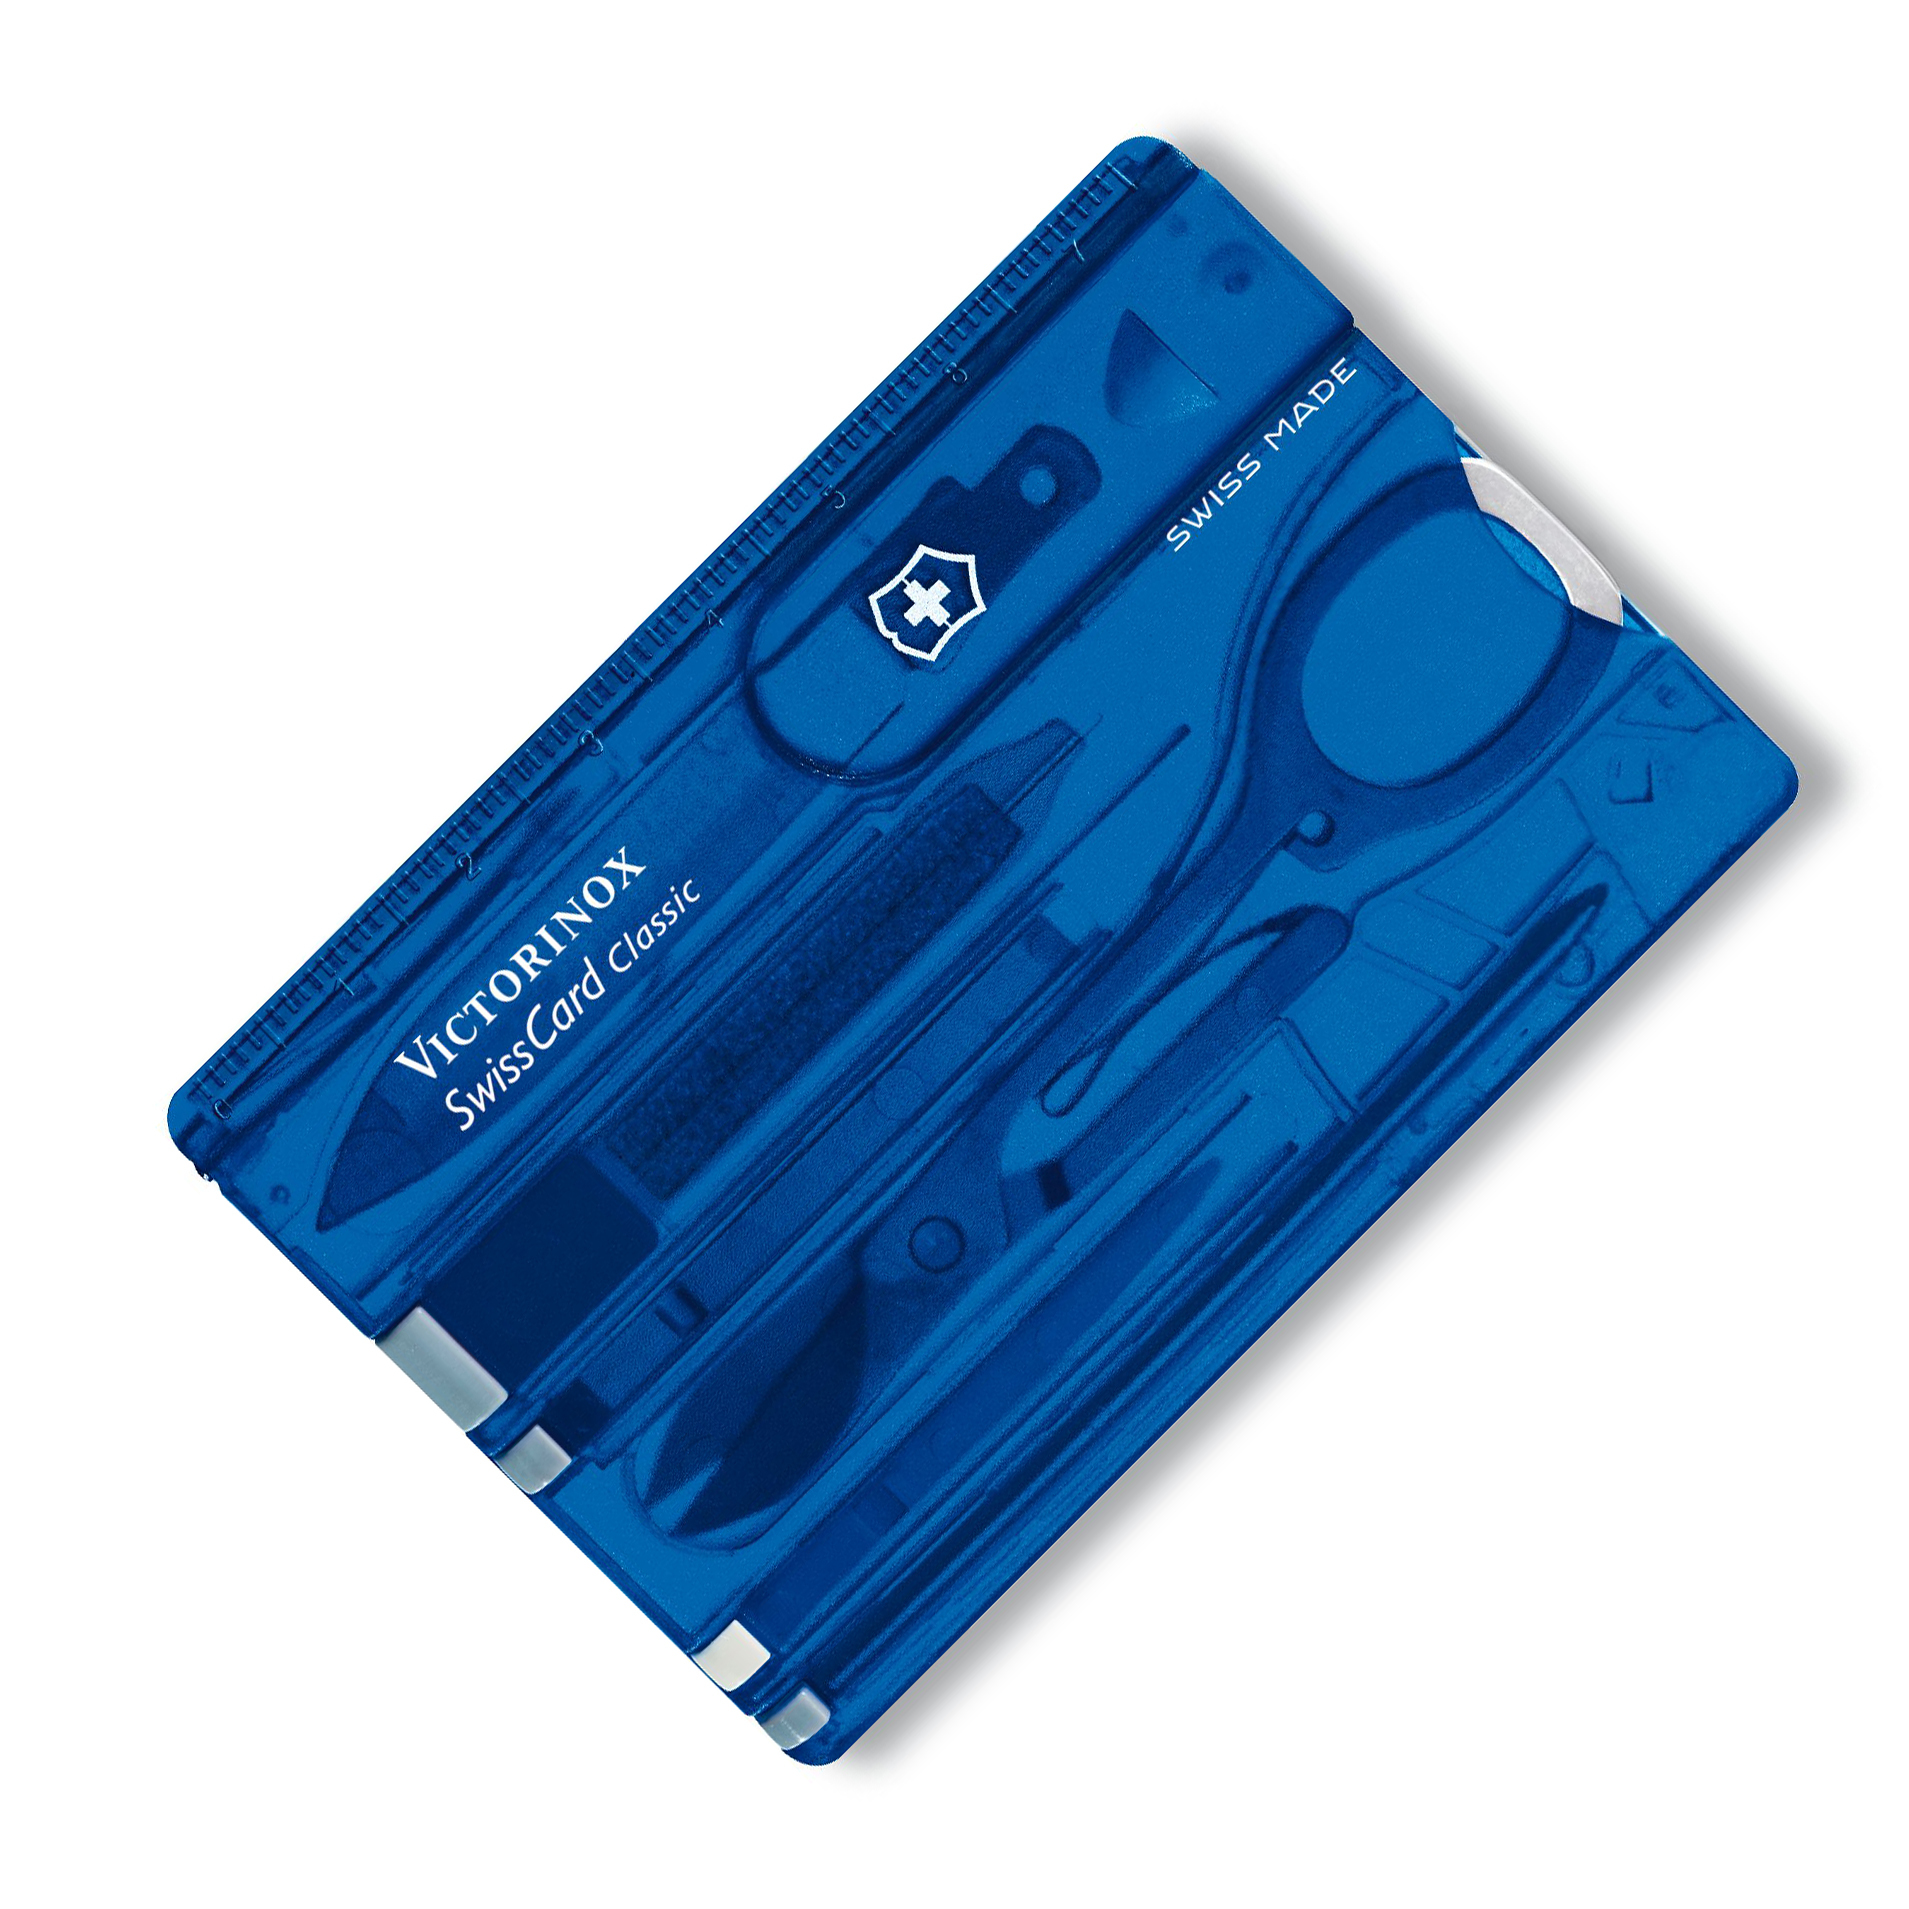   Victorinox SwissCard,  X50CrMoV15,  ABS-, 